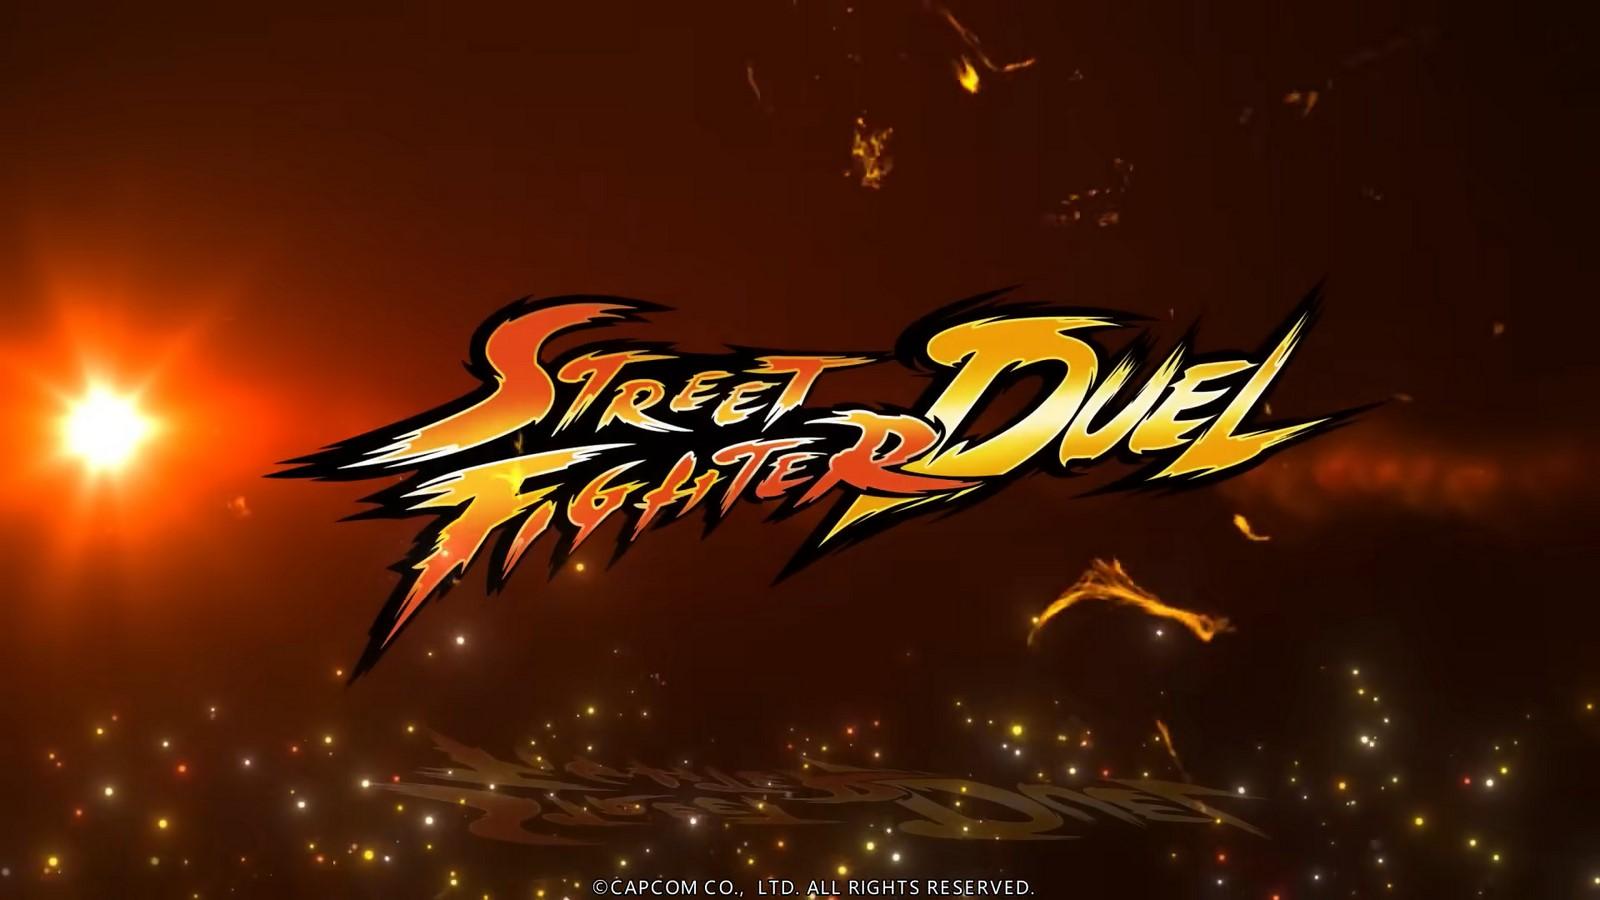 Street Fighter mobile ra đời với phiên bản Duel trên Android và iOS